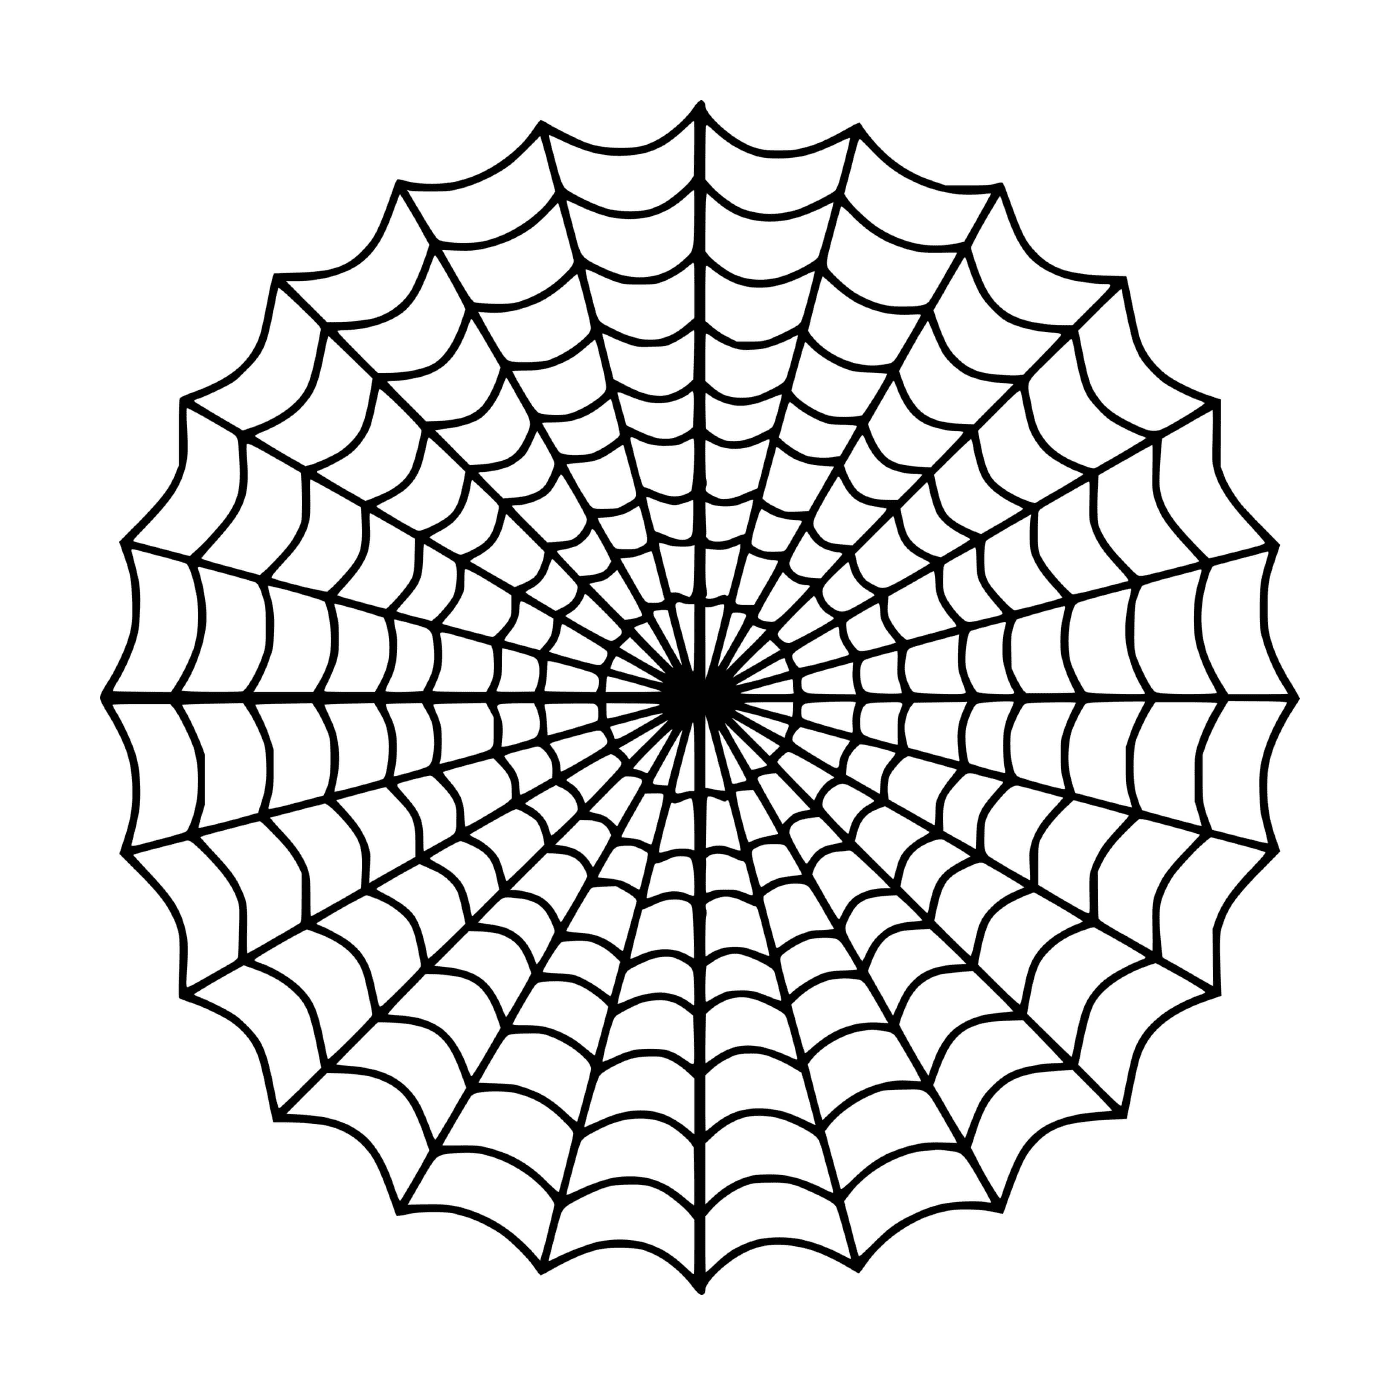  Ein Spinnennetz wird angezeigt 